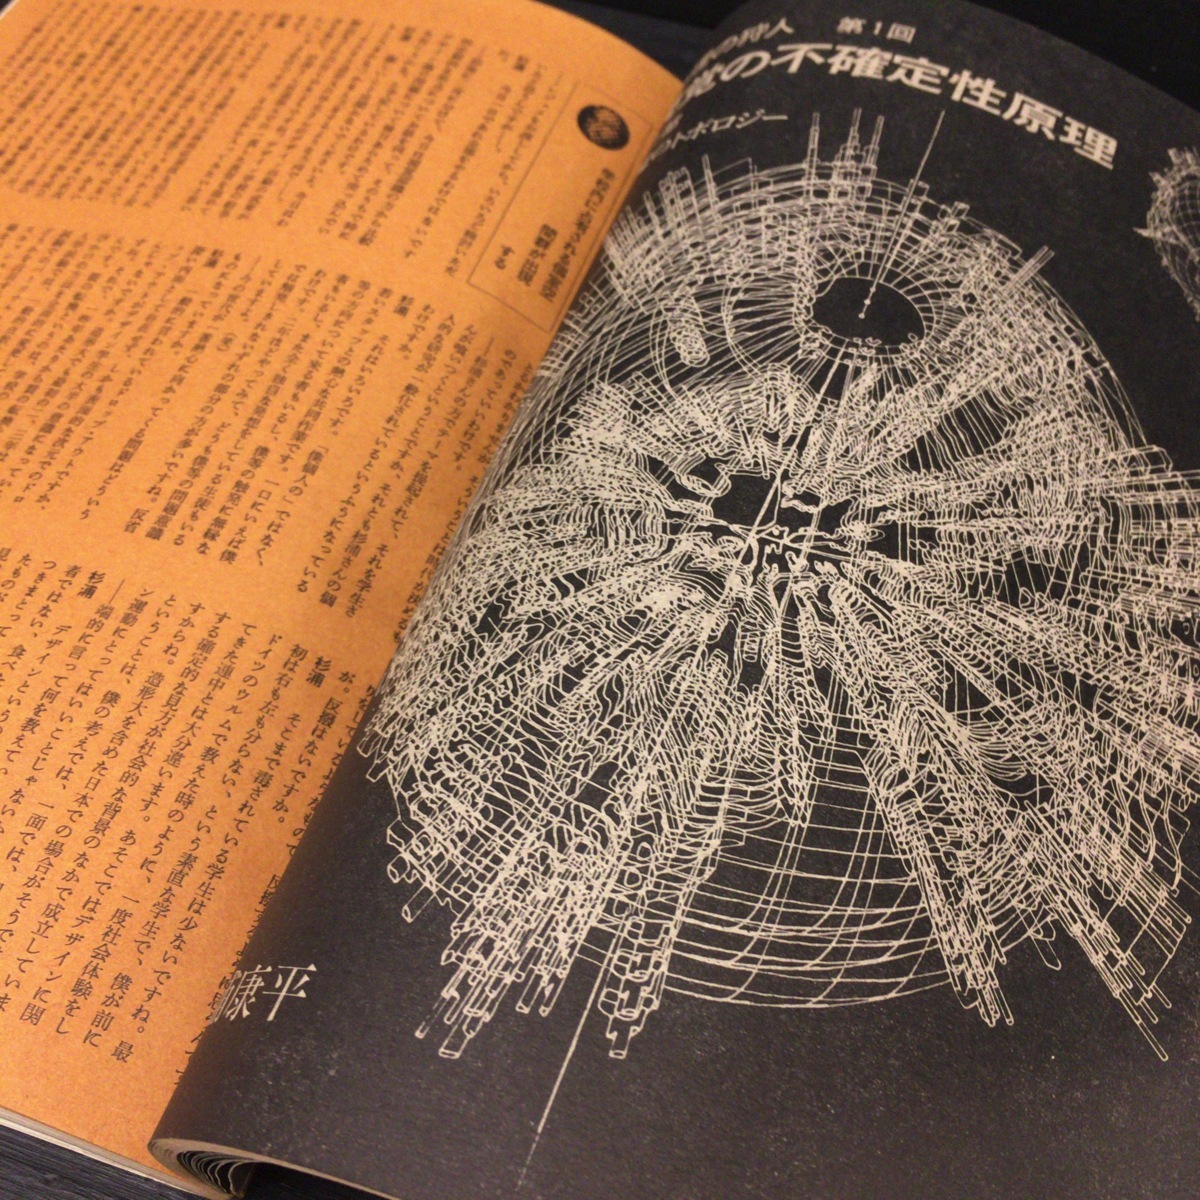 【正規品】 遊 magazine 雑誌『objet 創刊号 1971年 表紙構成:杉浦 